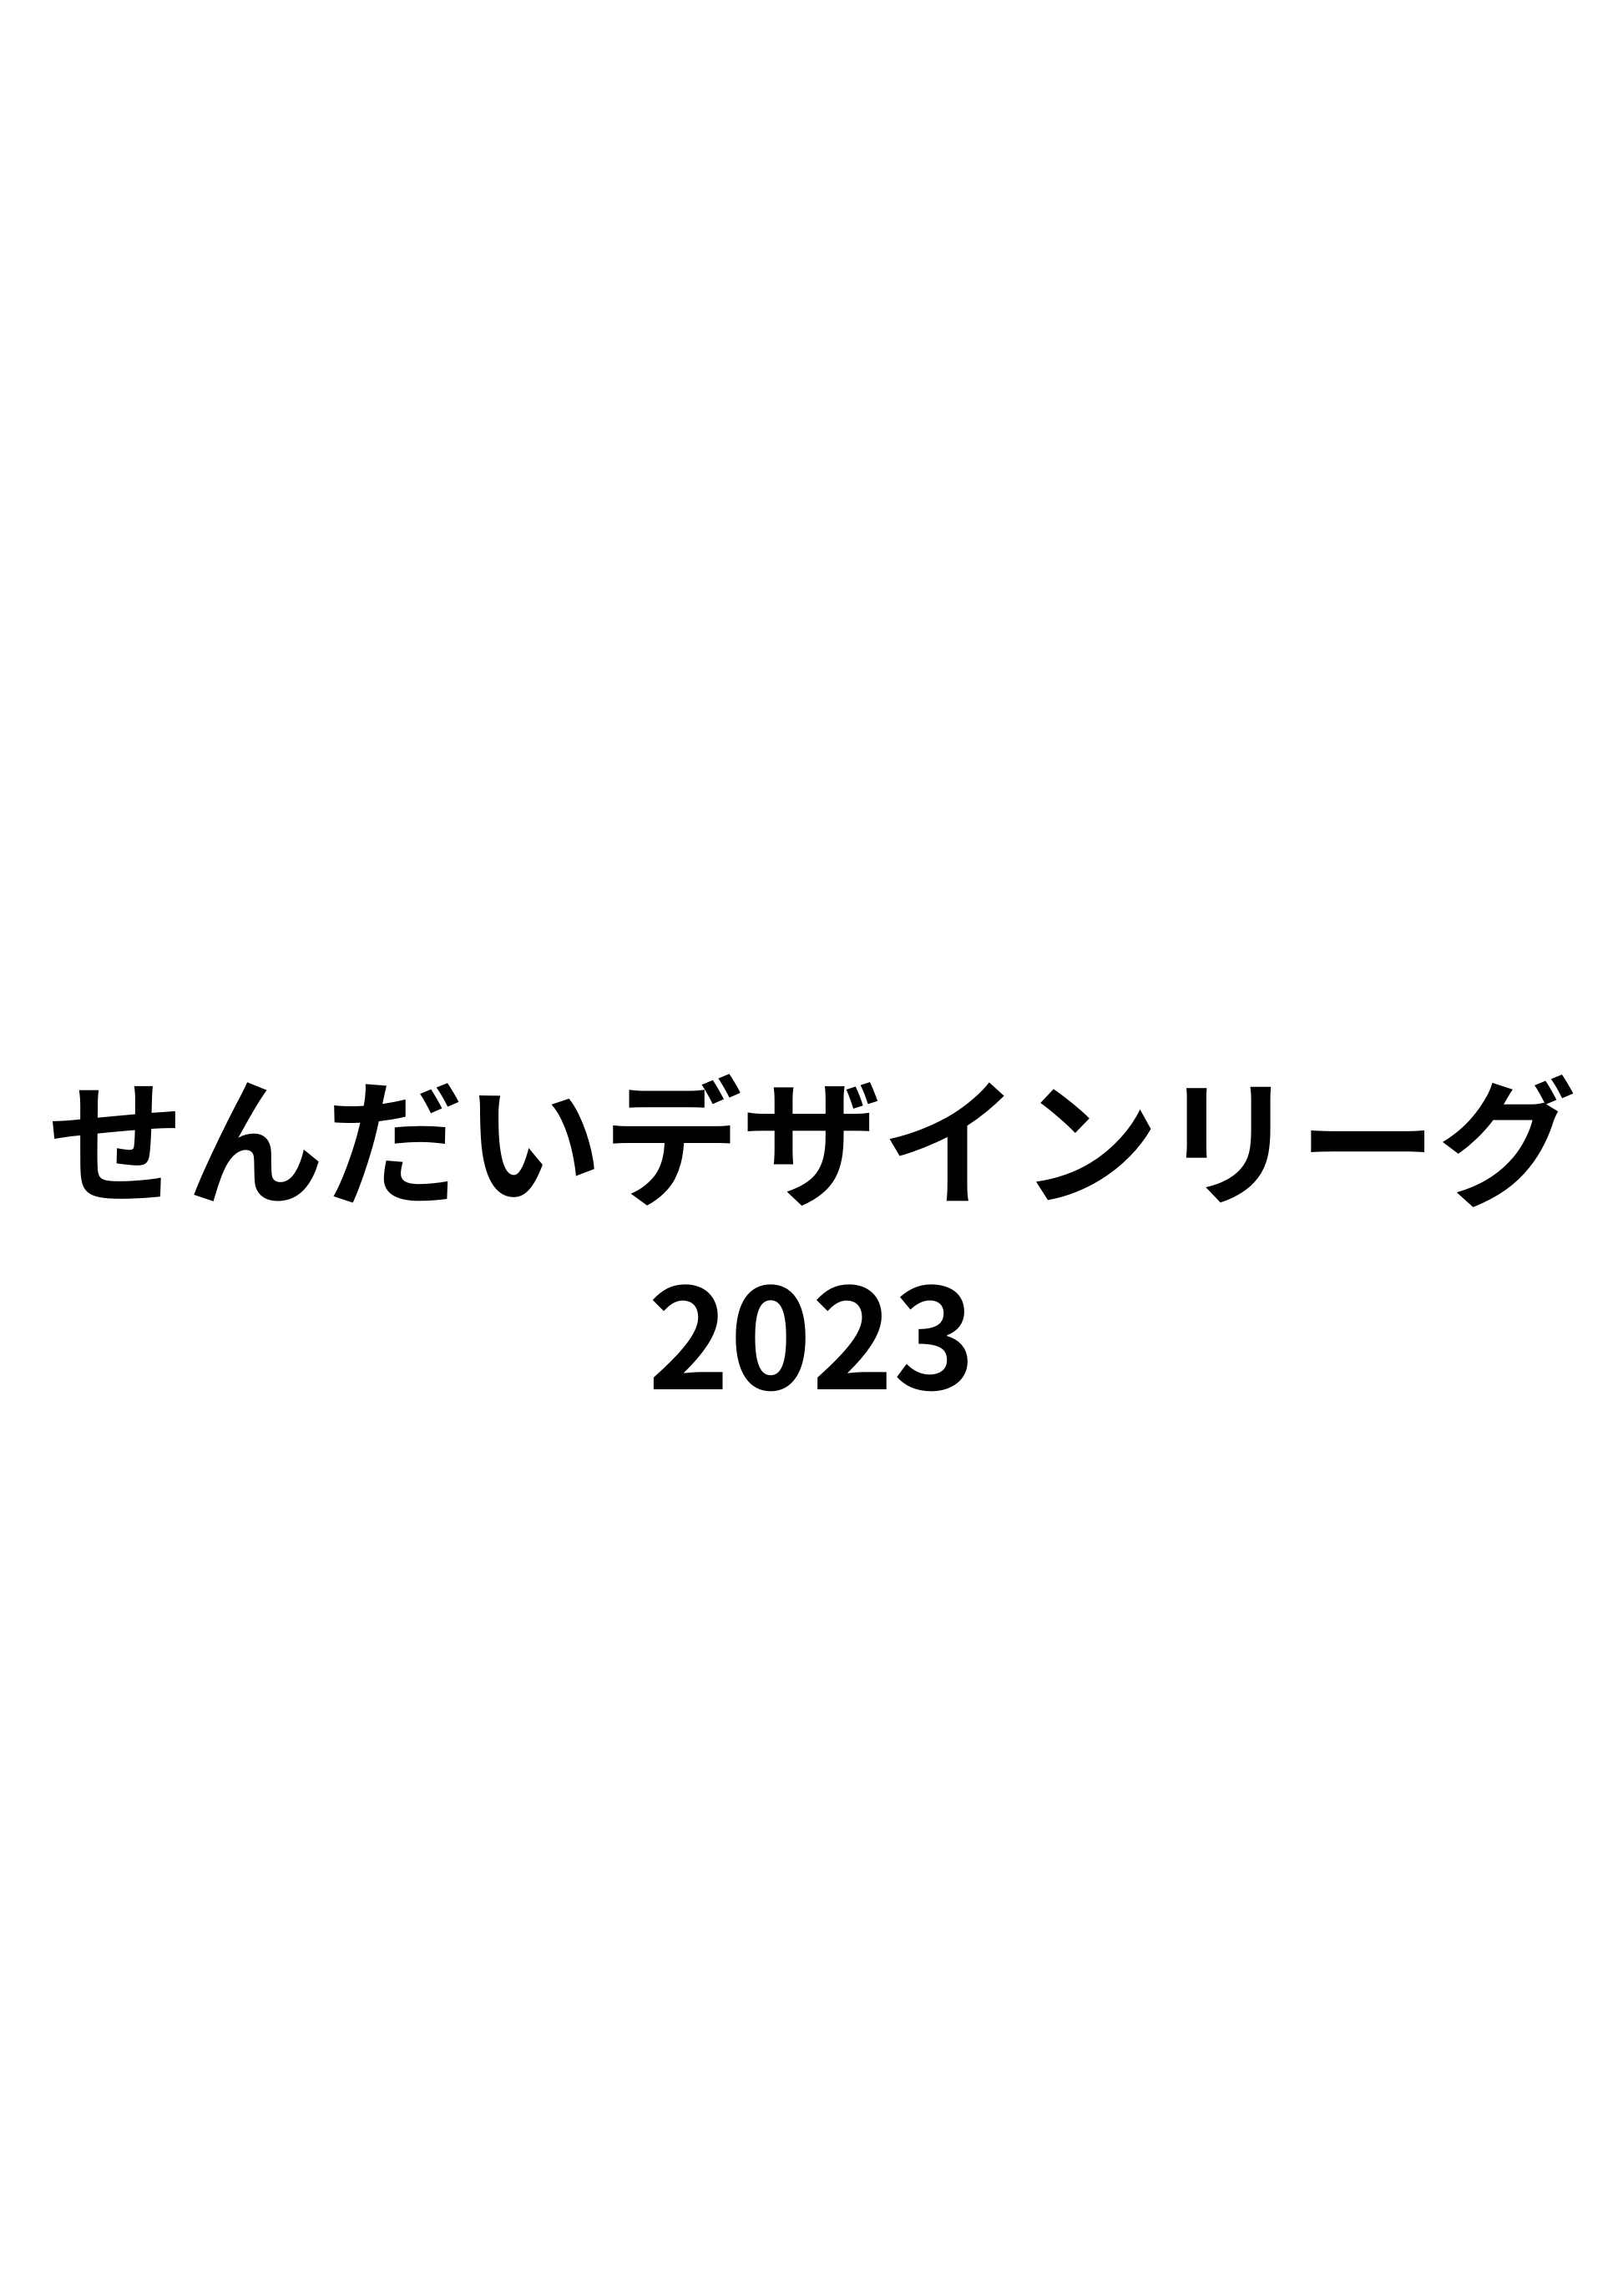 せんだいデザインリーグ2023卒業設計日本一決定戦